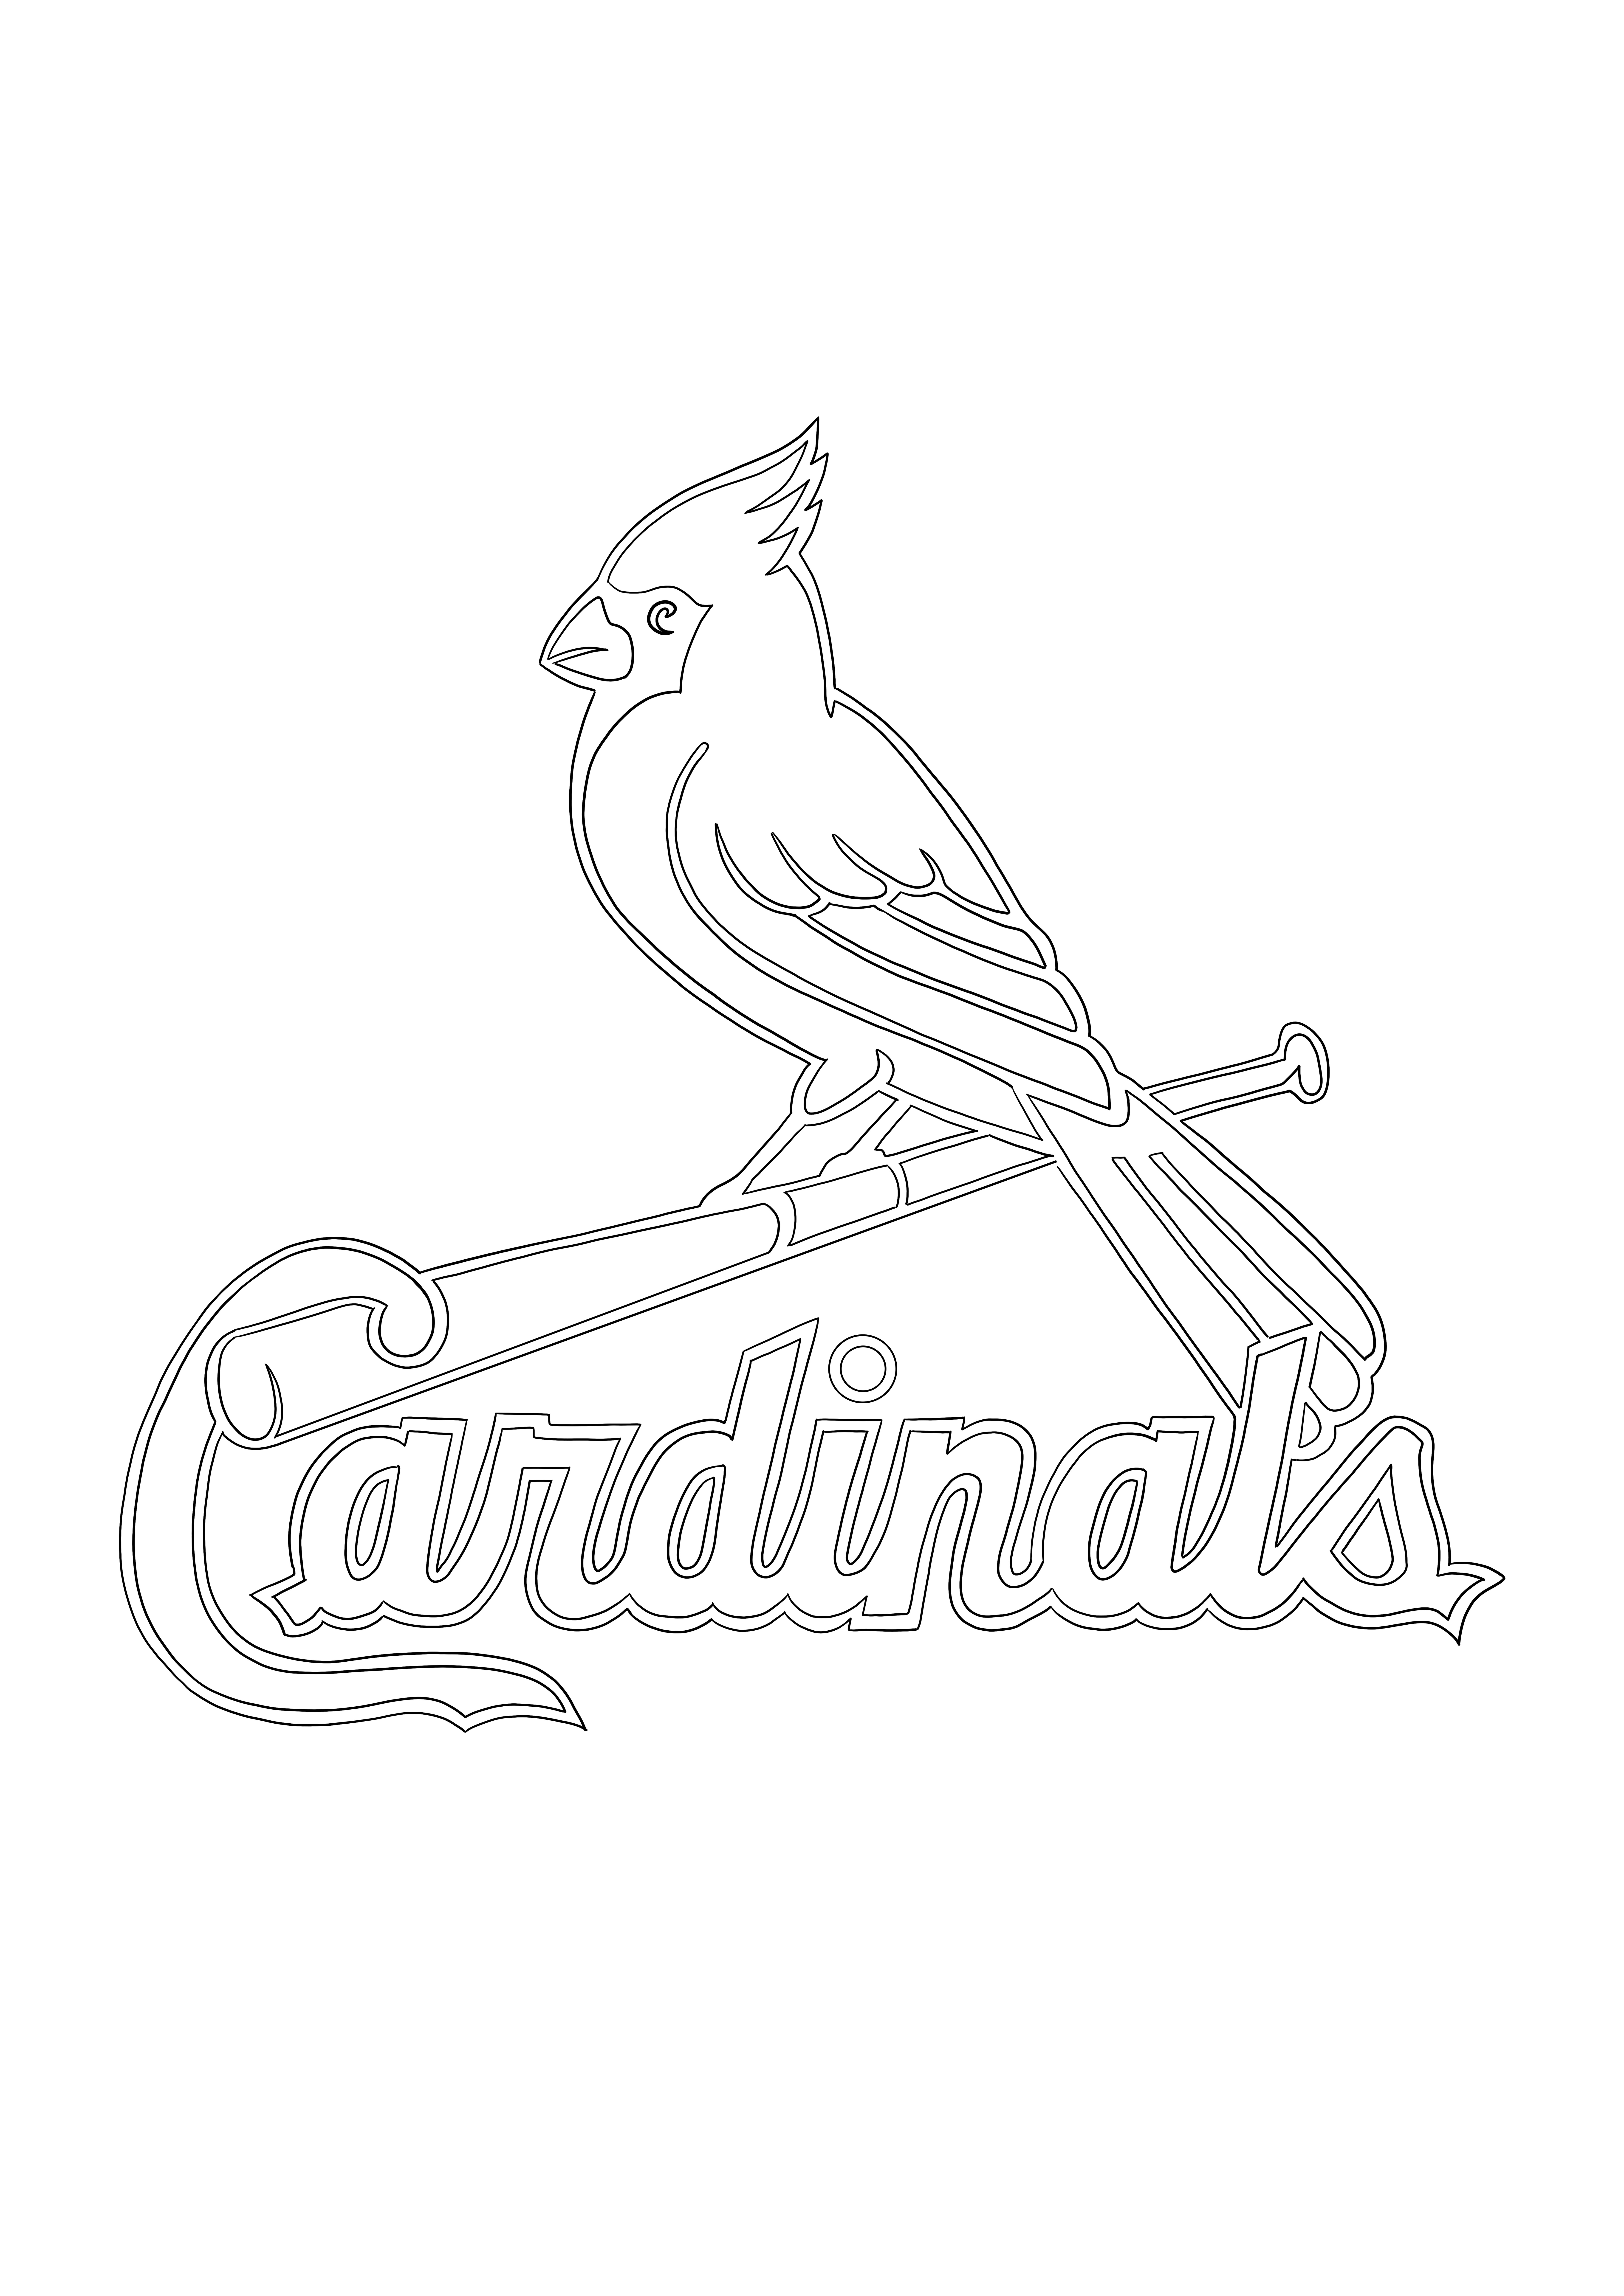 Logo St. Louis Cardinals, aby zapisać na później lub pobrać do koloru